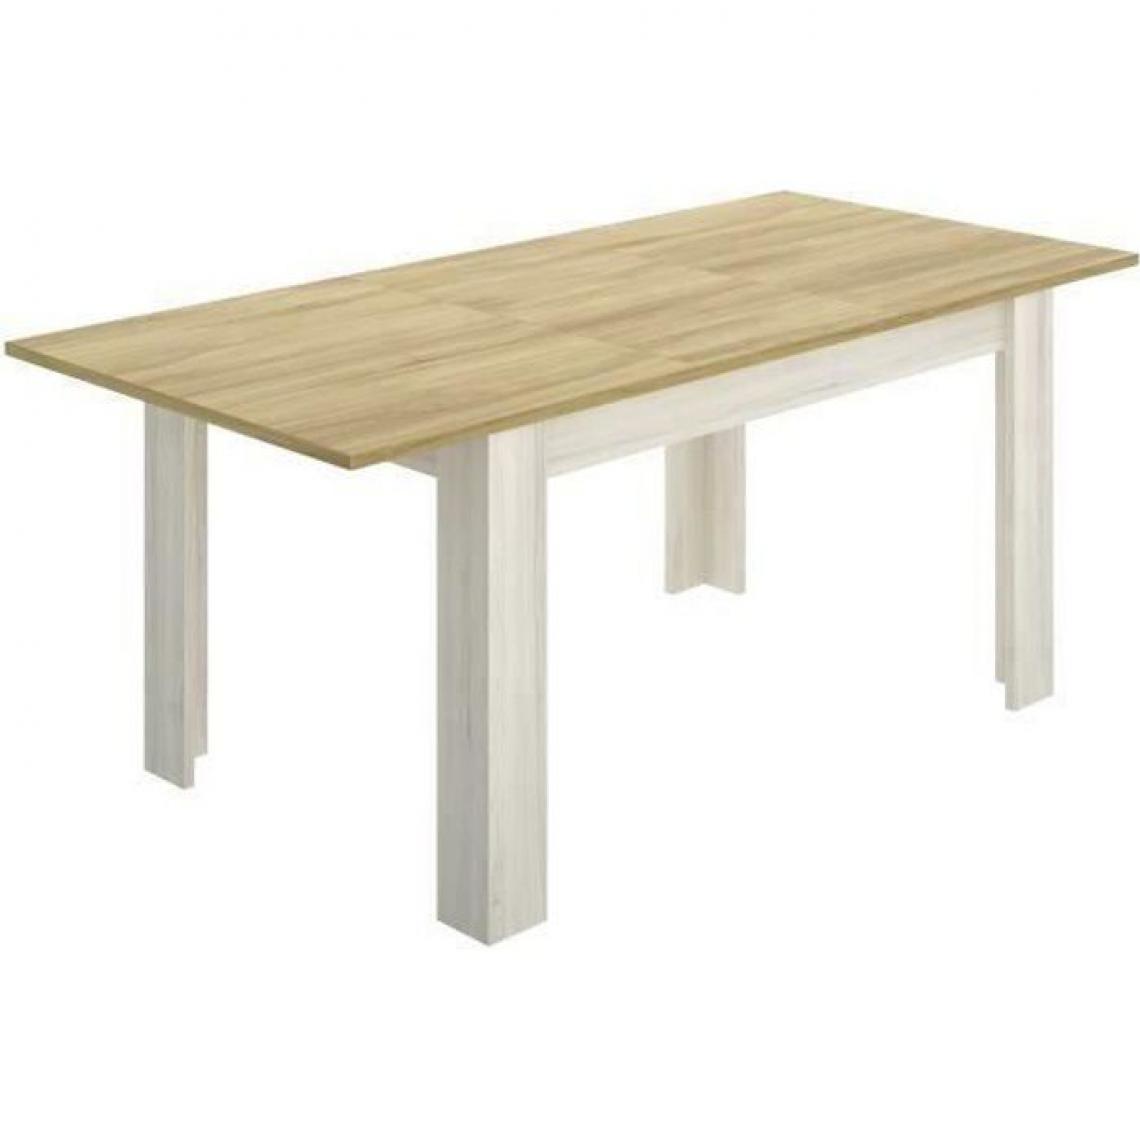 Cstore - CSTORE - table à manger extensible 6-8 personnes - décor chêne clair - l 140 / 190xp 90xh 77 cm - dine - Tables à manger